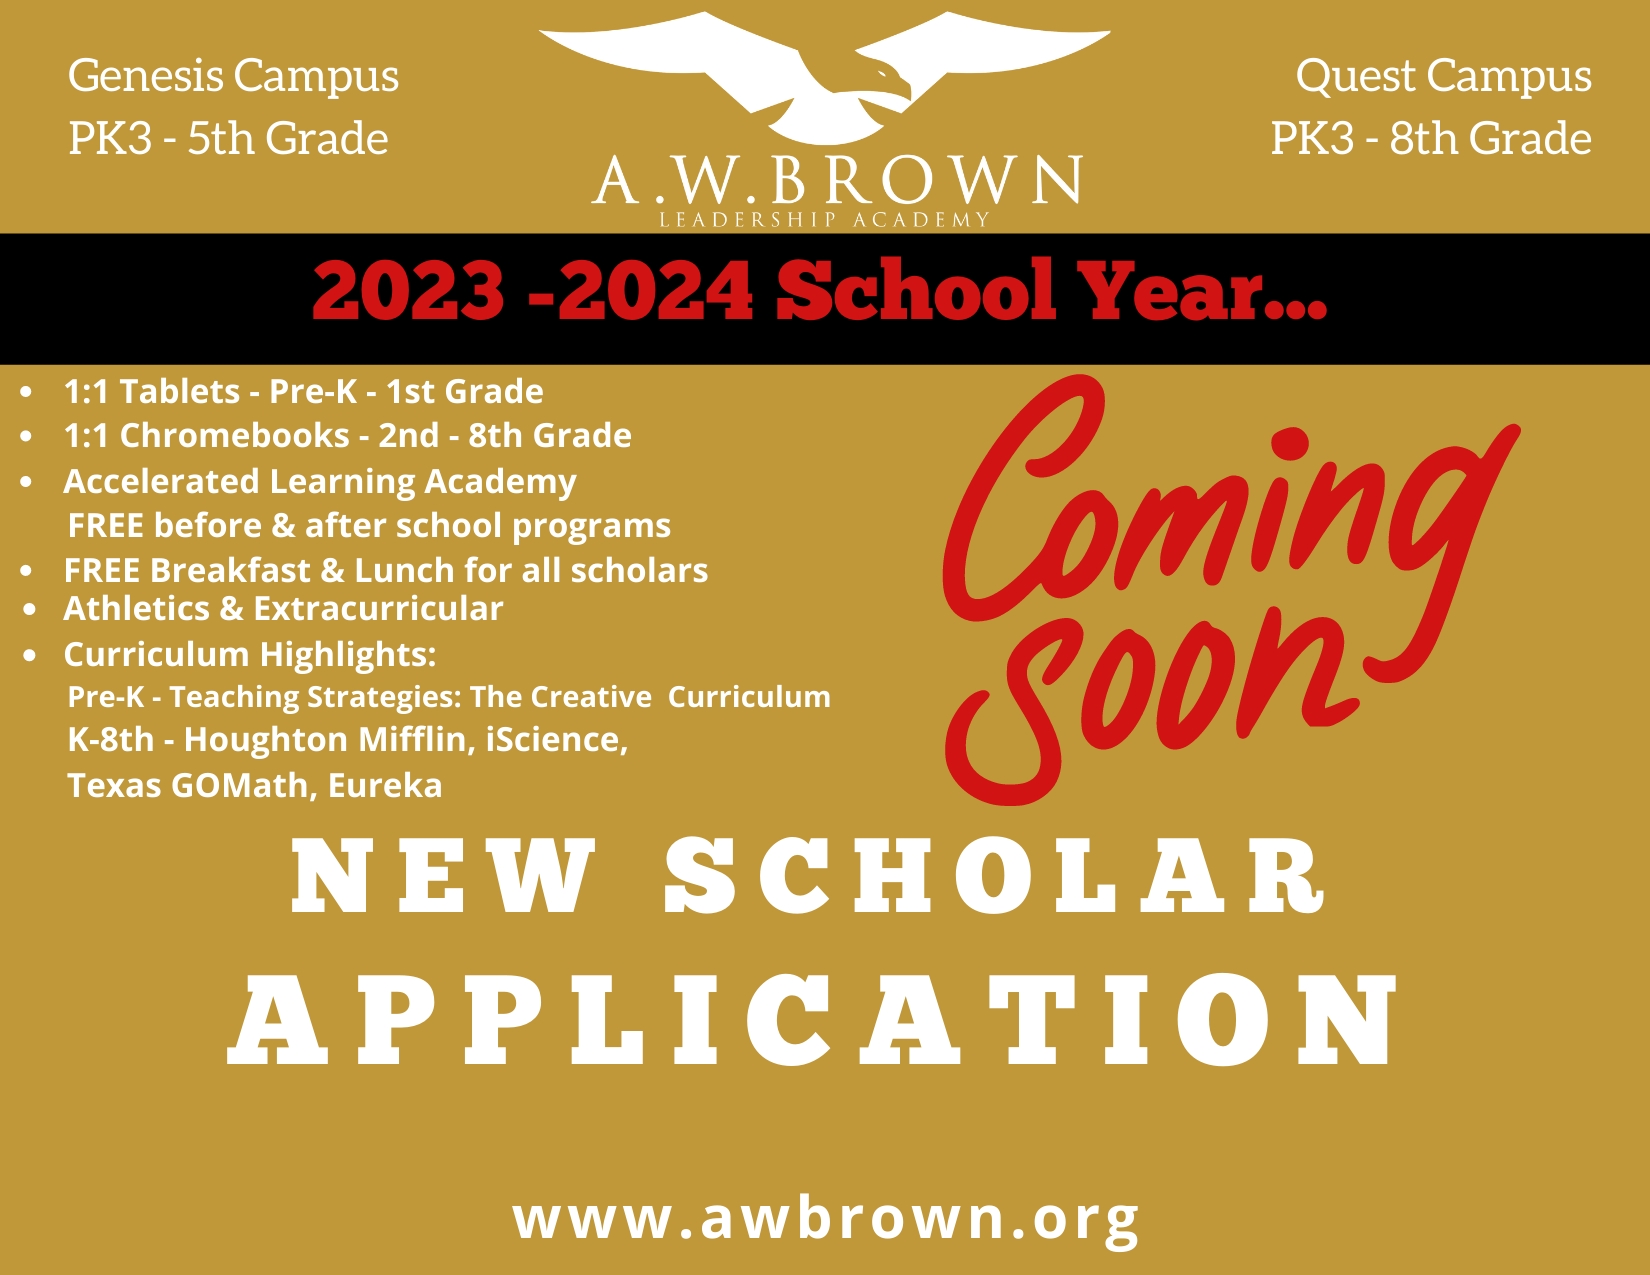 Coming soon - New Scholar Enrollment